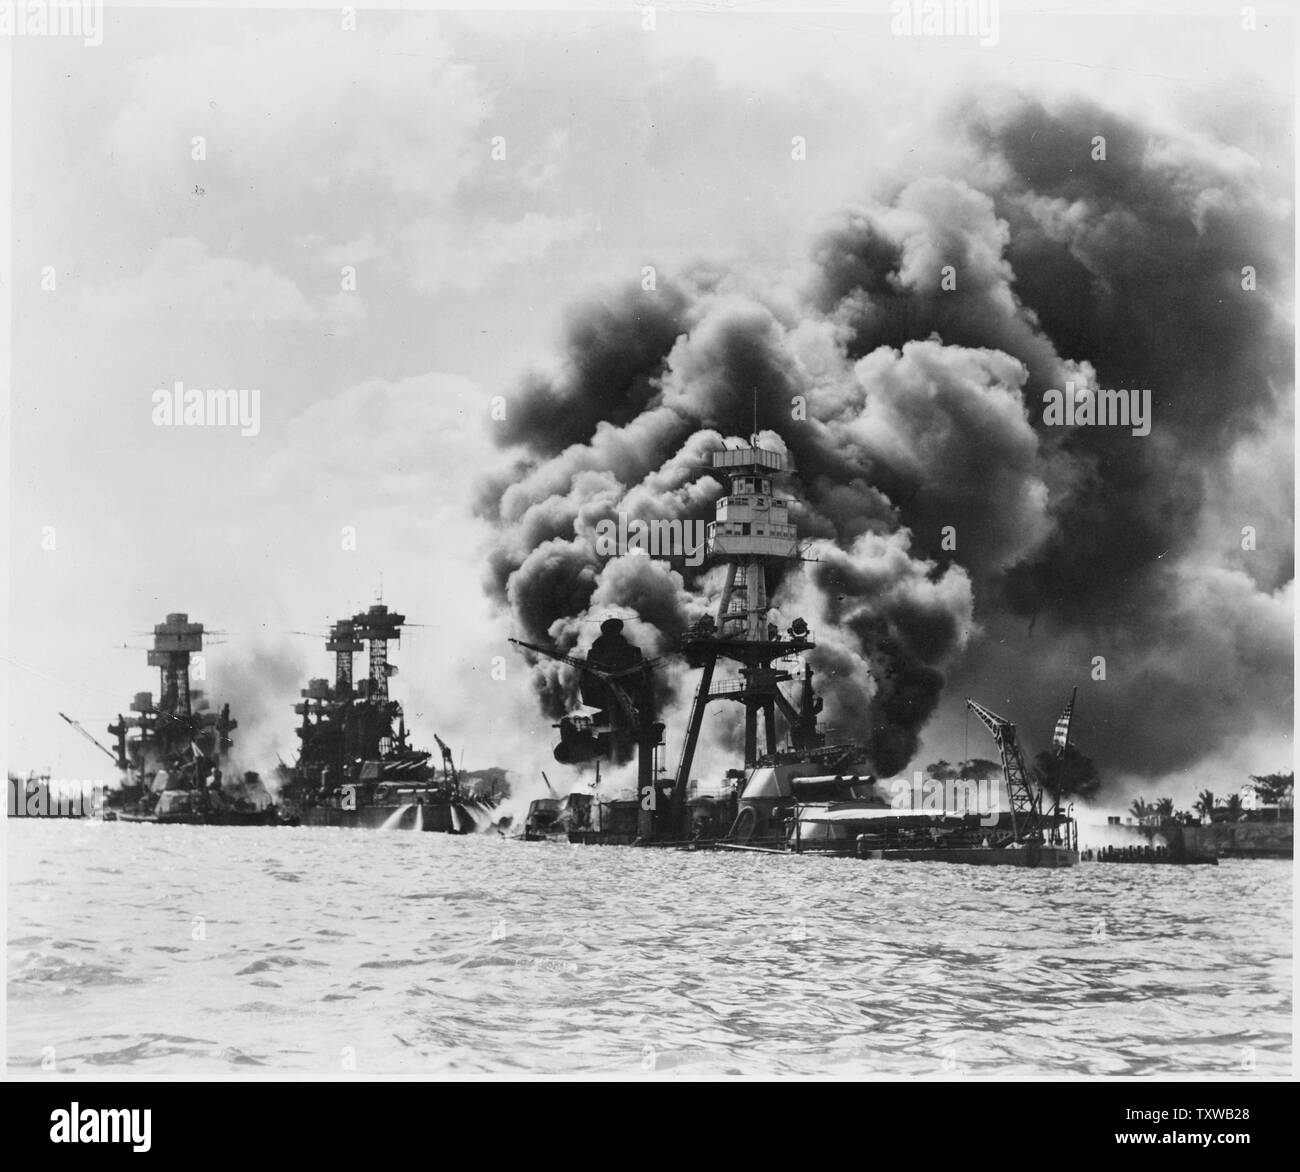 Después de un ataque sorpresa japonés sobre estos tres acorazados estadounidenses afectadas; de izquierda a derecha: USS West Virginia (severamente dañado), USS Tennessee (dañado) y el USS Arizona (hundido) Foto de stock